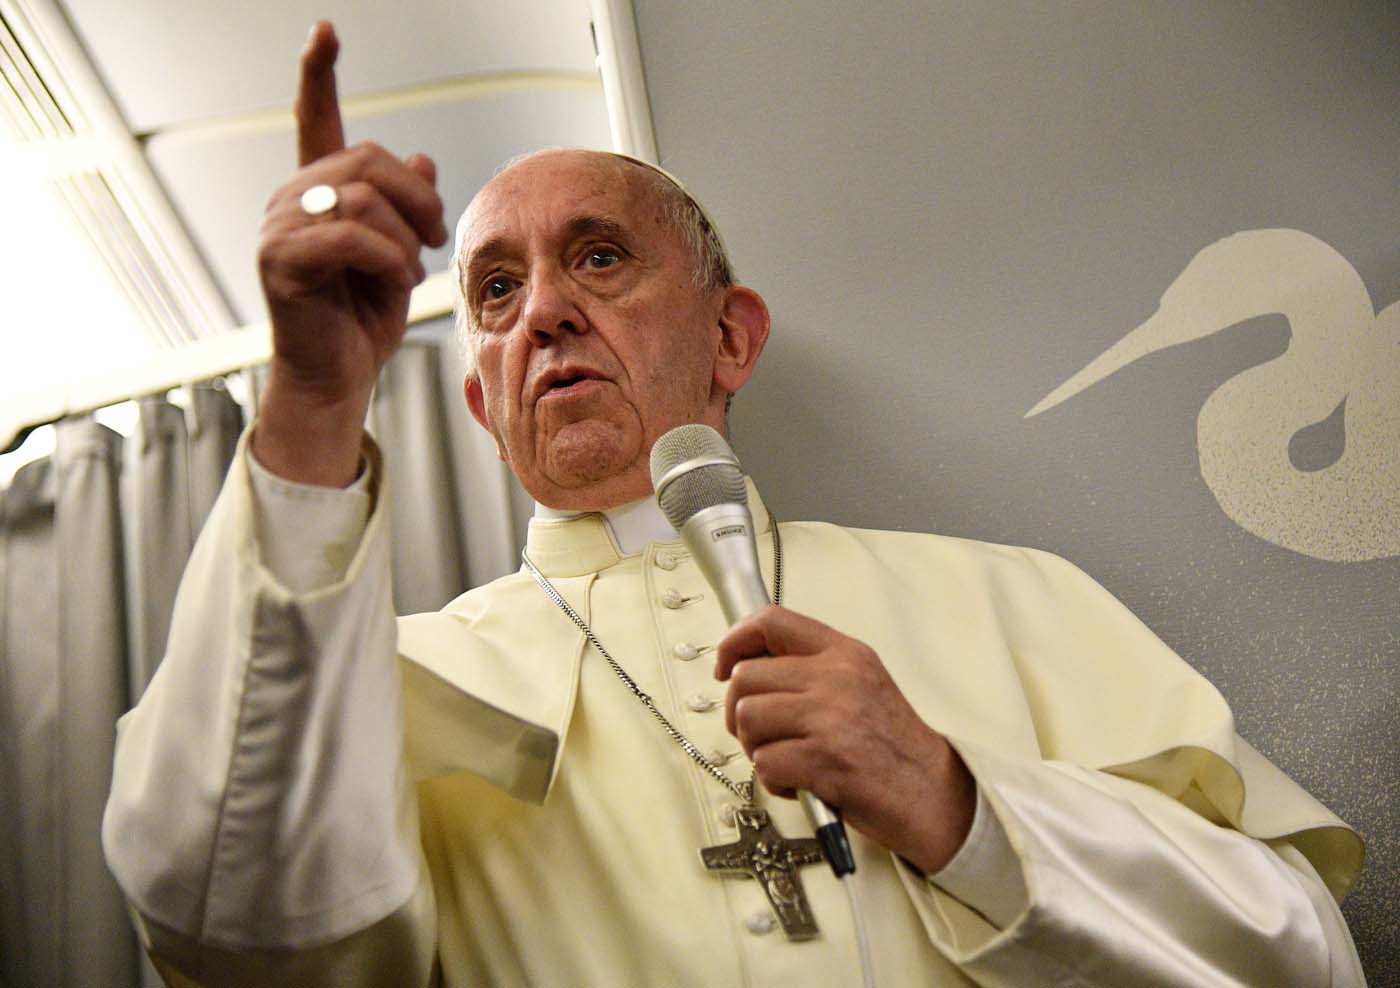 Dimite el ministro de Comunicación del Vaticano tras polémica de manipulación